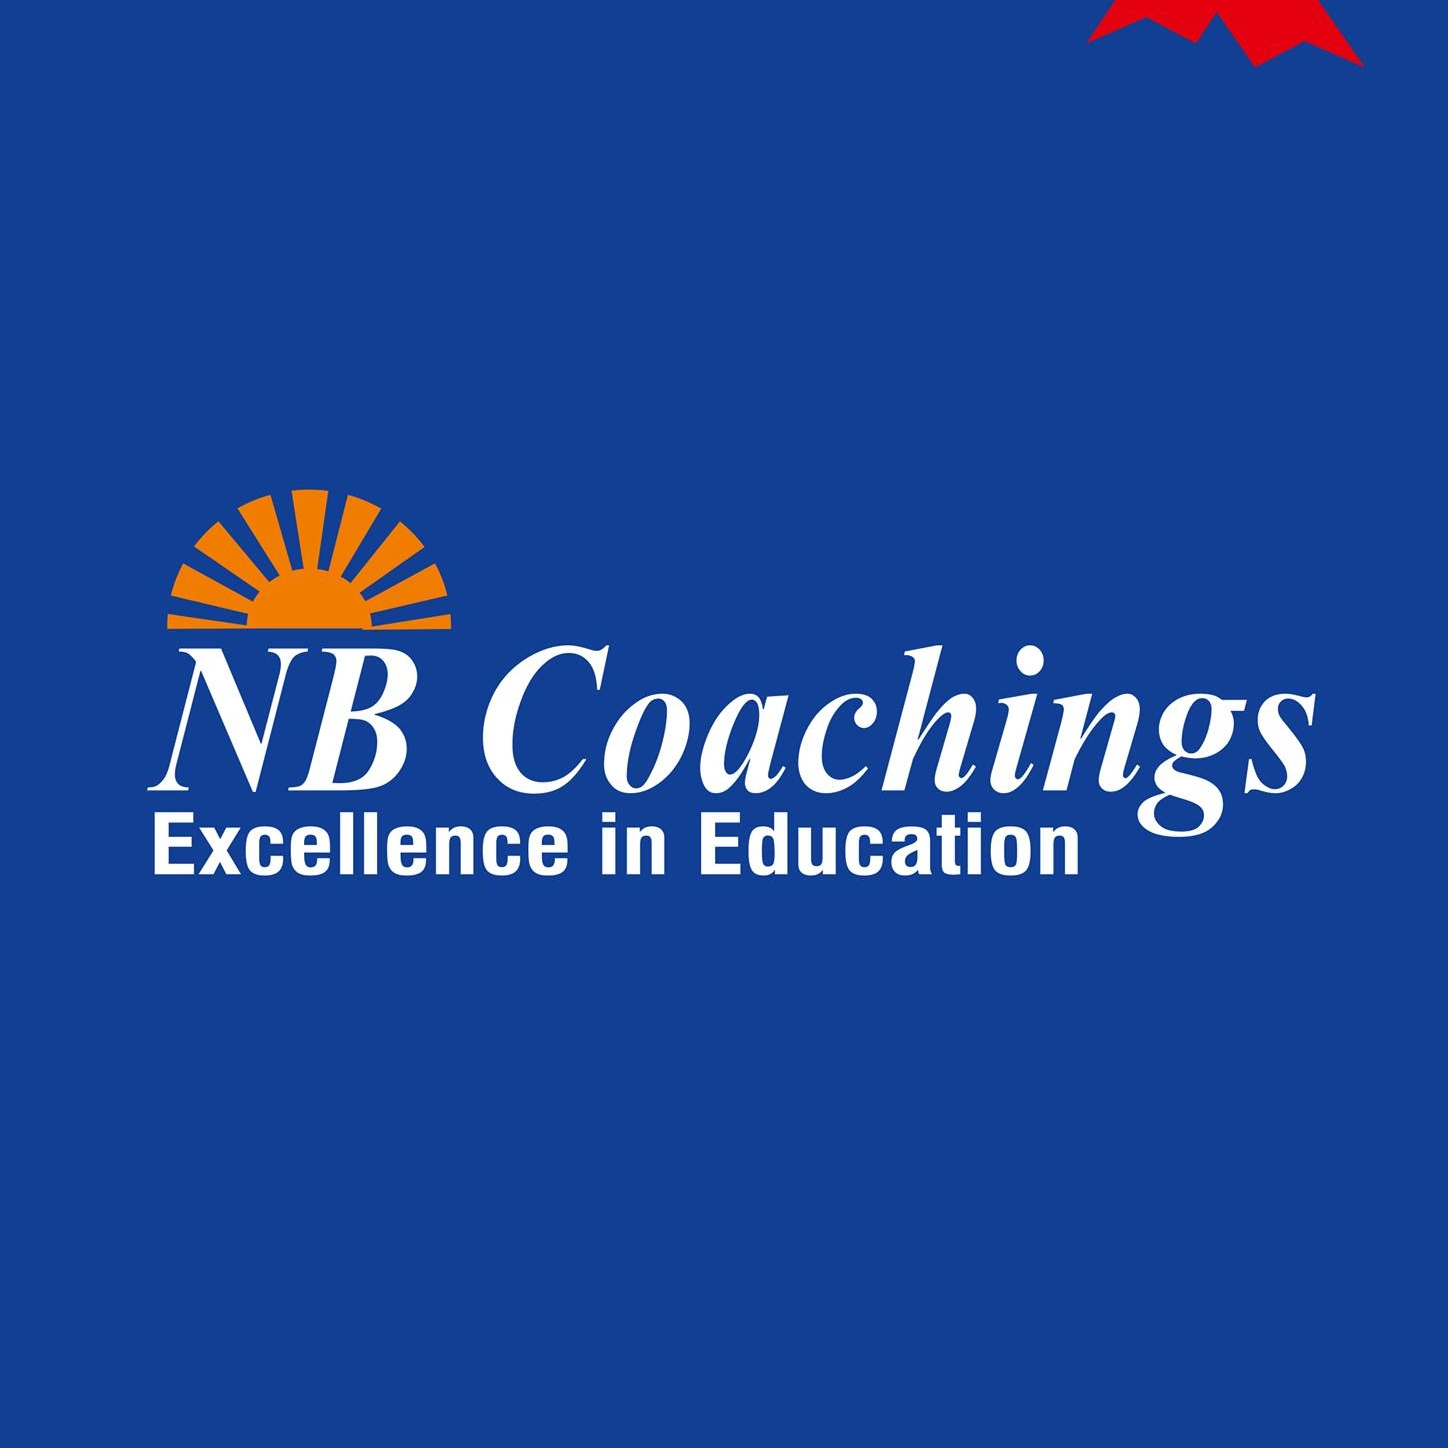 NB Coachings